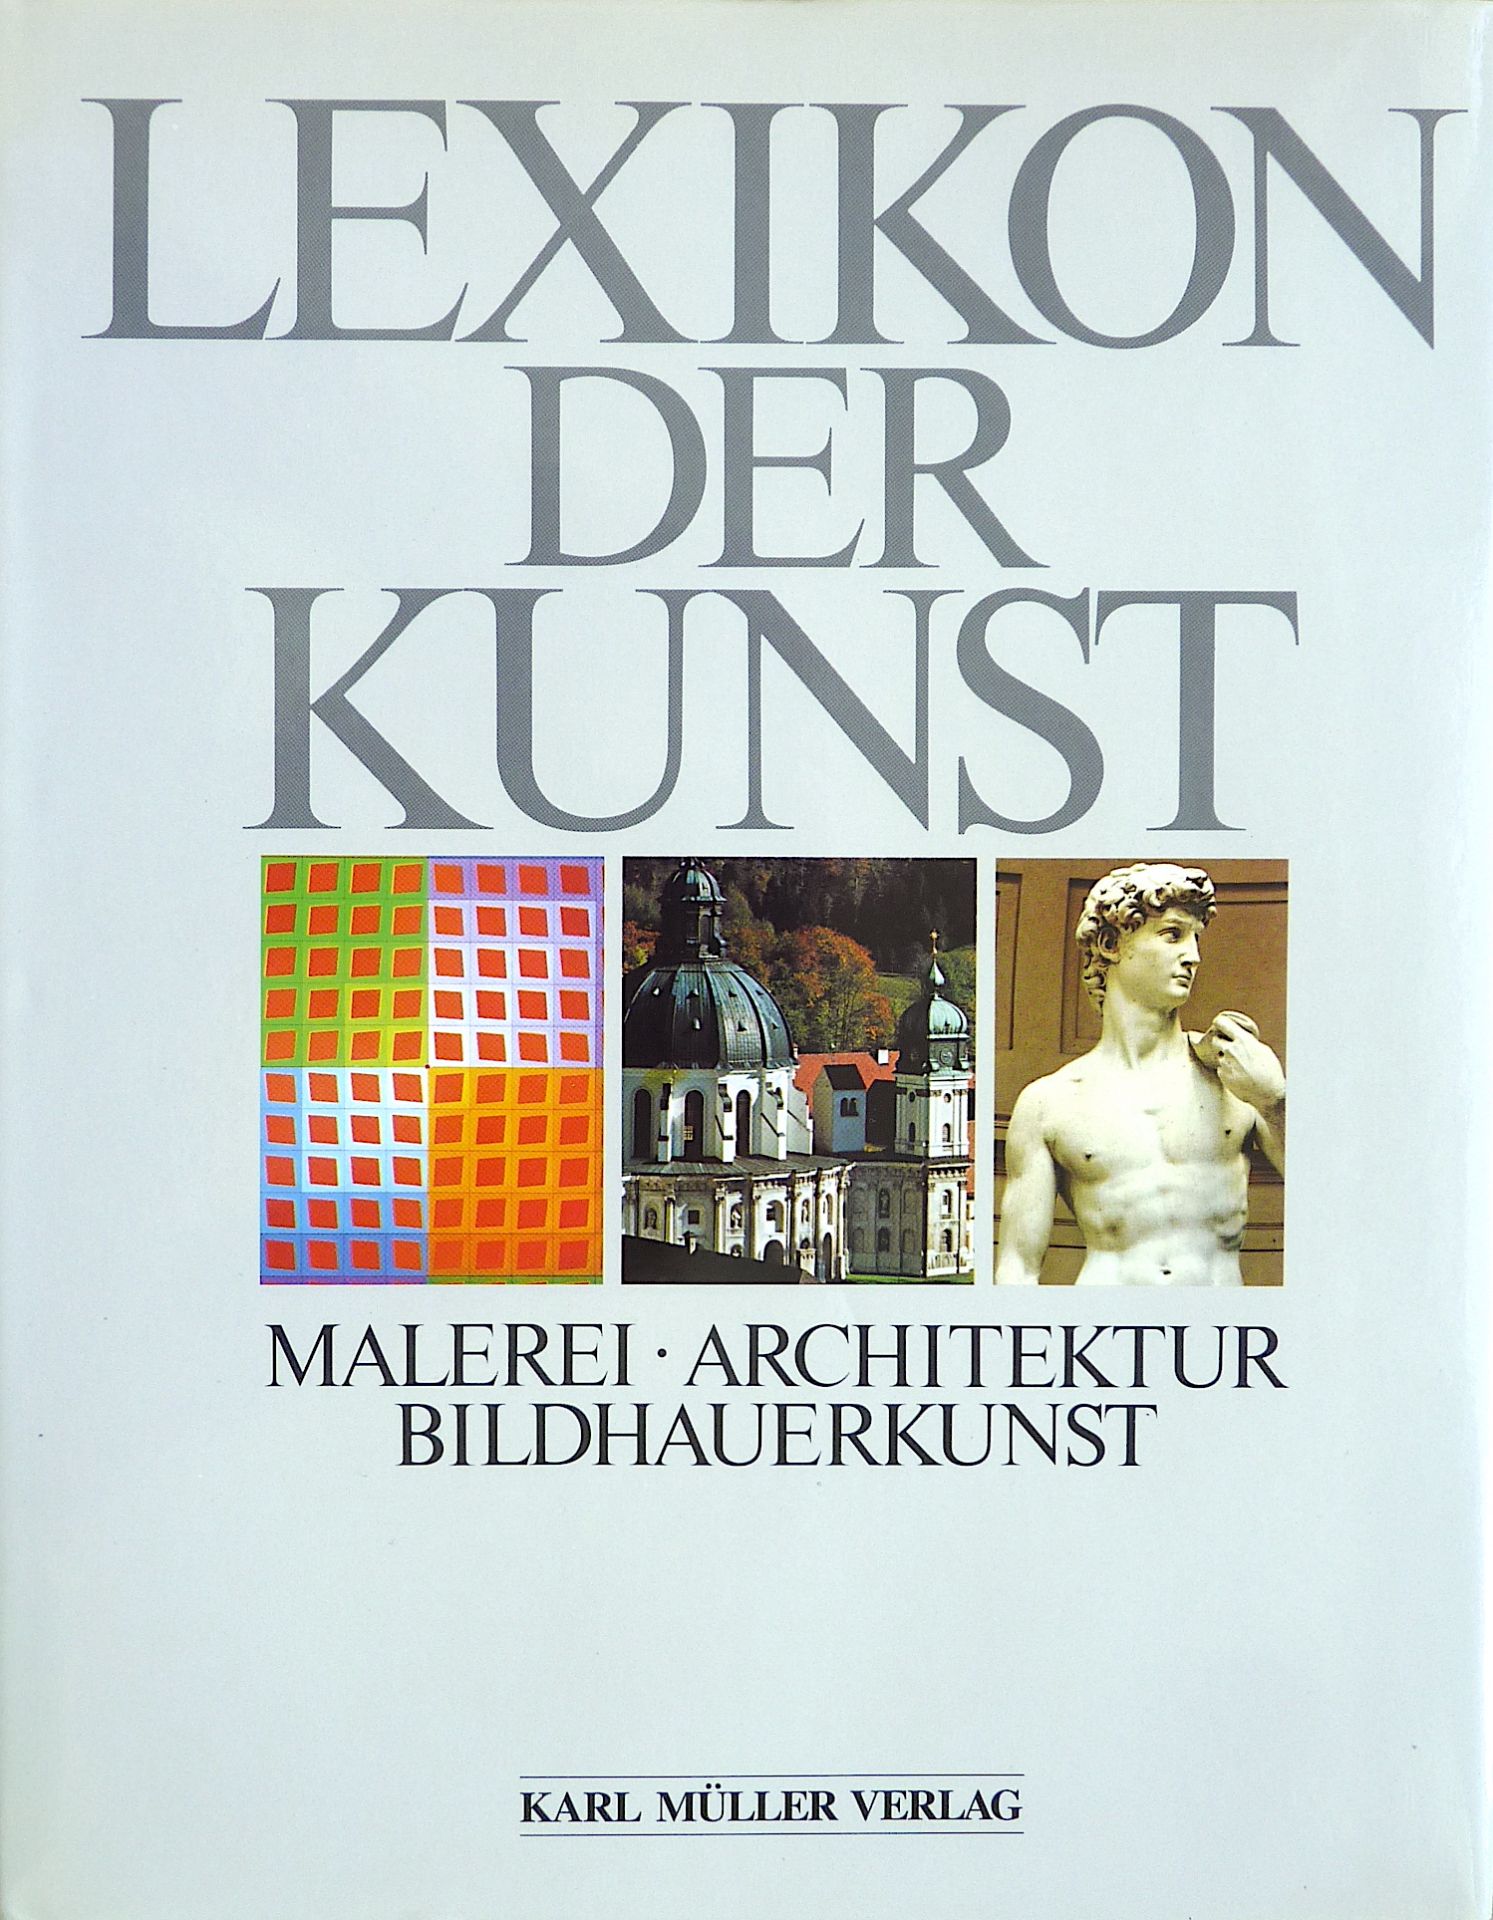 VERSCHIEDENE, : "Lexikon der Kunst", 1994